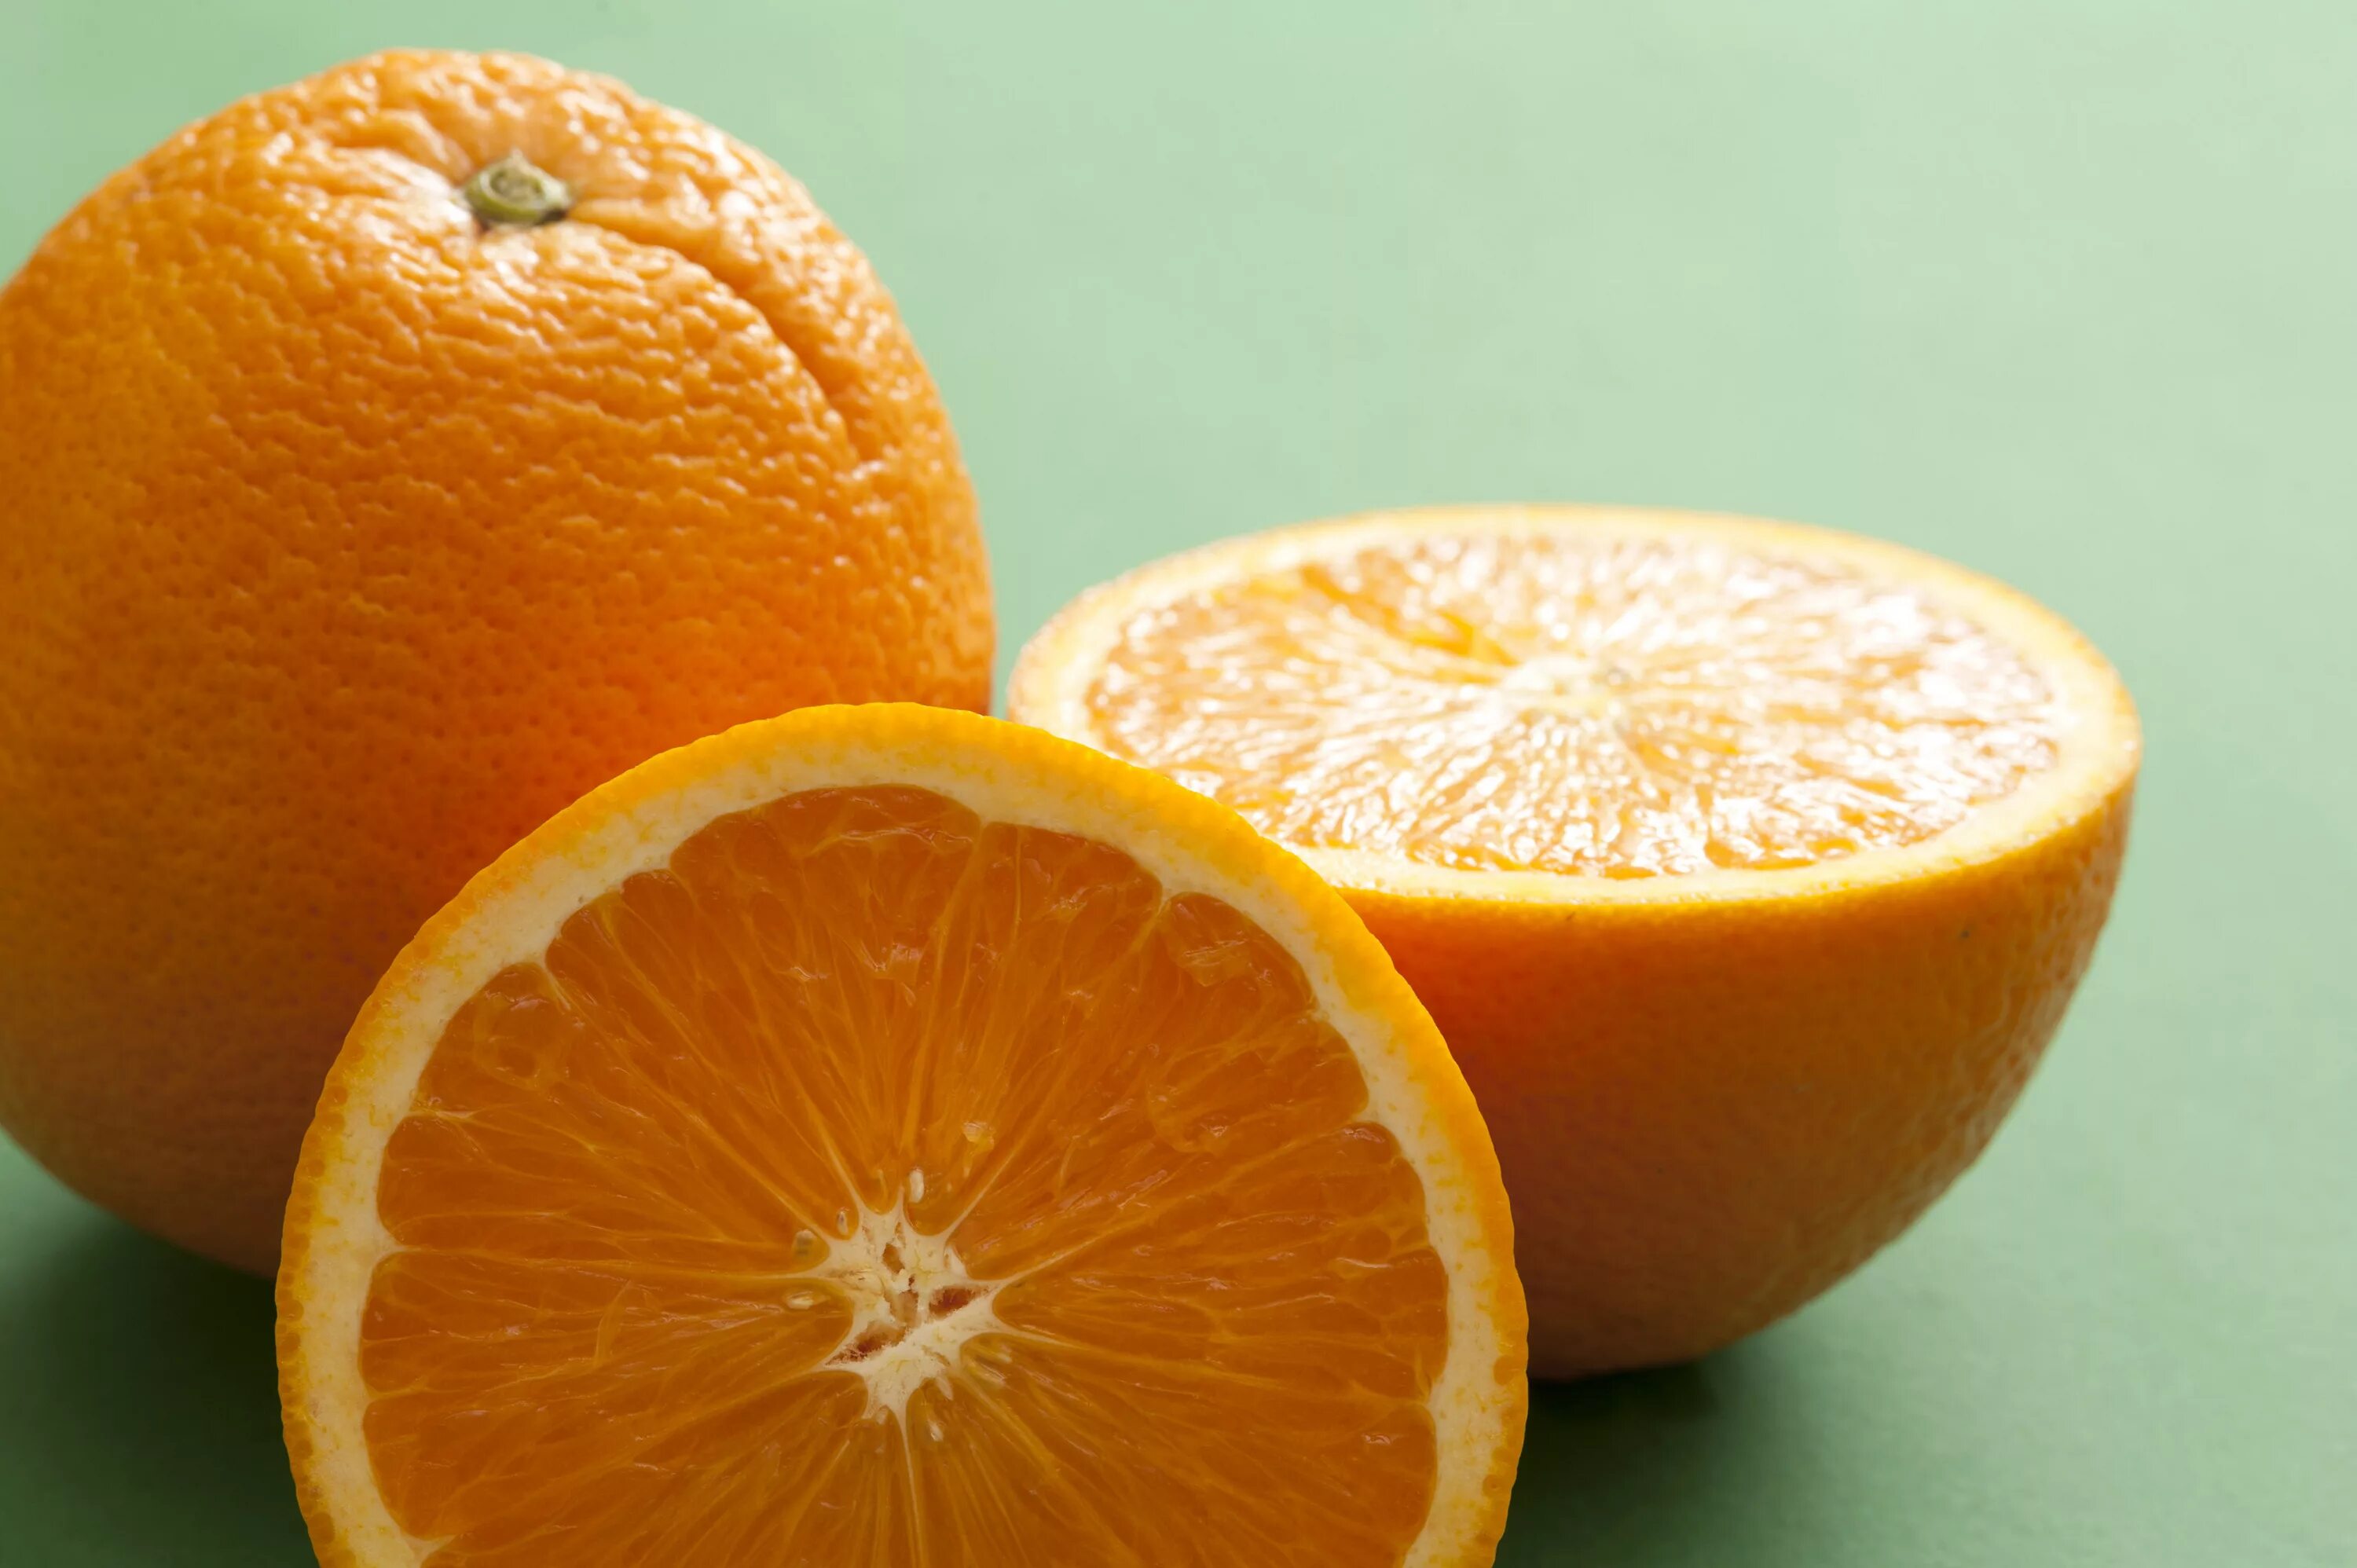 Orange choose. Apelsin 1:1. Апельсин (плод). Оранжевый апельсин. Срез апельсина.